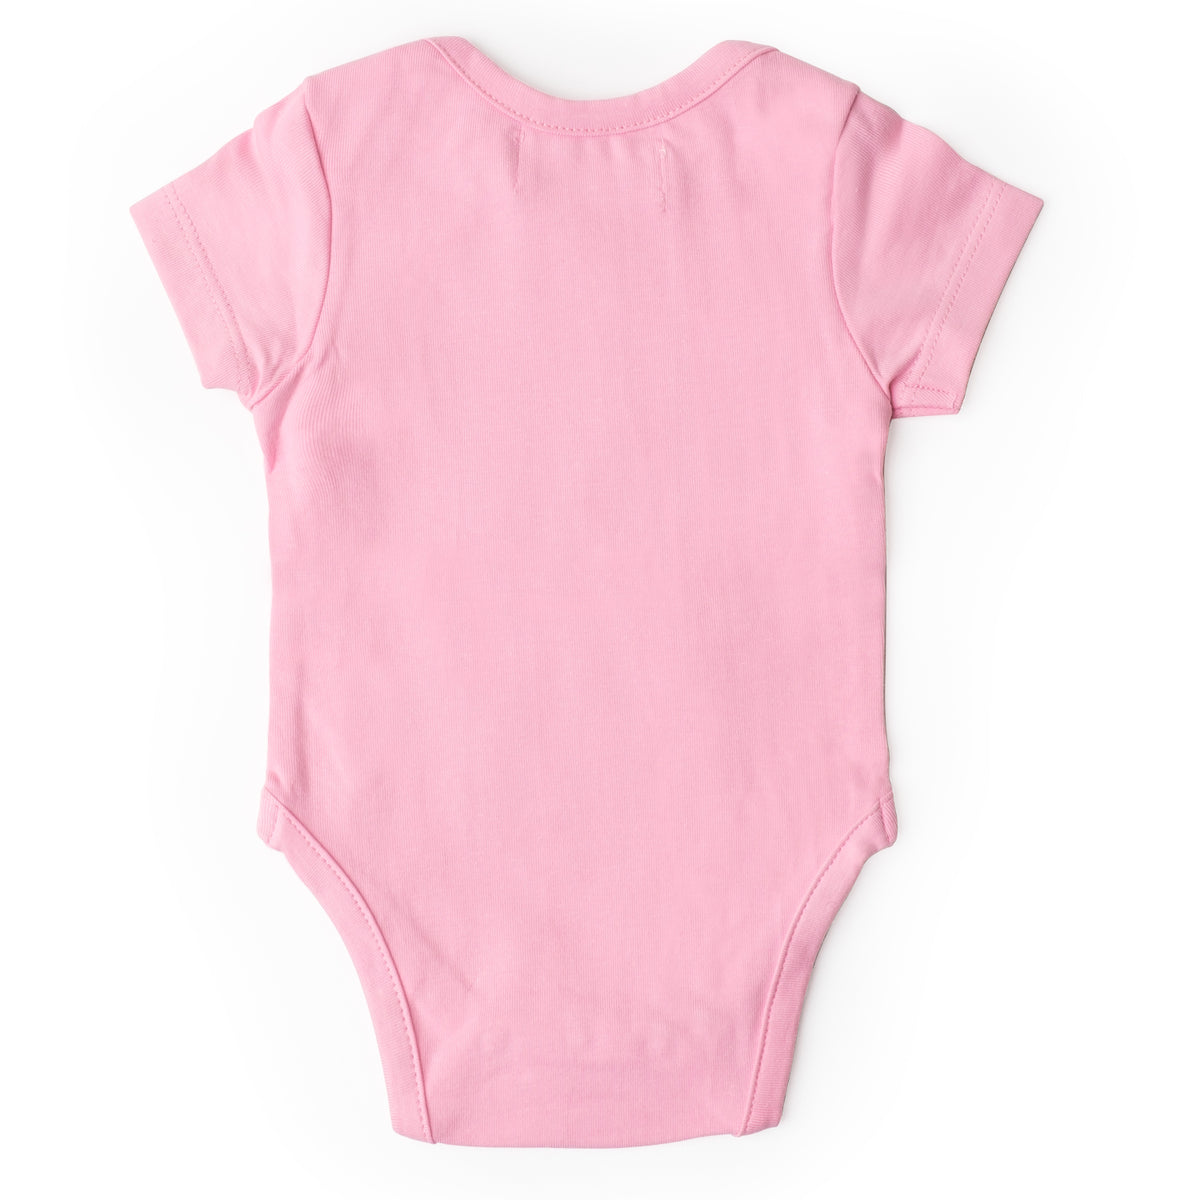 Size kids /Bodysuit Extender Film Adjustable Length Cotton - Pink, as  described 